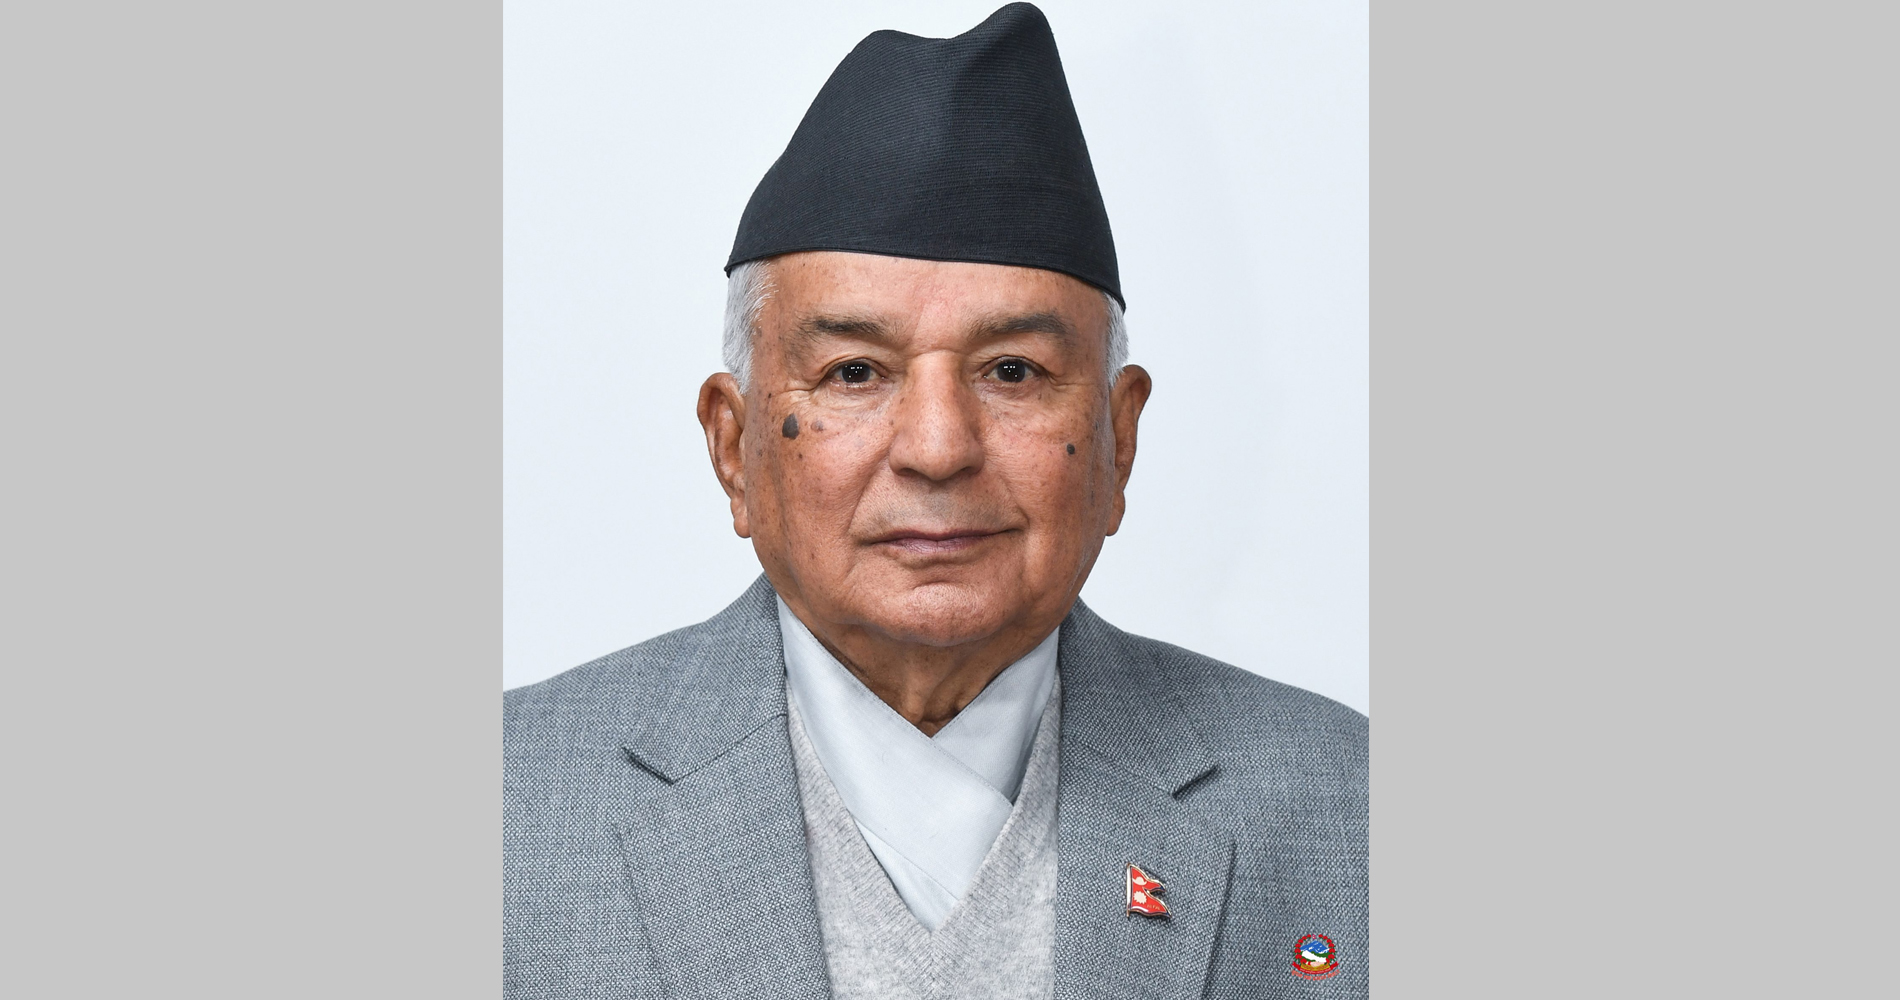 निरंकुश शासनको अन्त्यका लागि नेपाली प्रेस जगतले महत्त्वपूर्ण भूमिका निभाएको छः राष्ट्रपति पौडेल